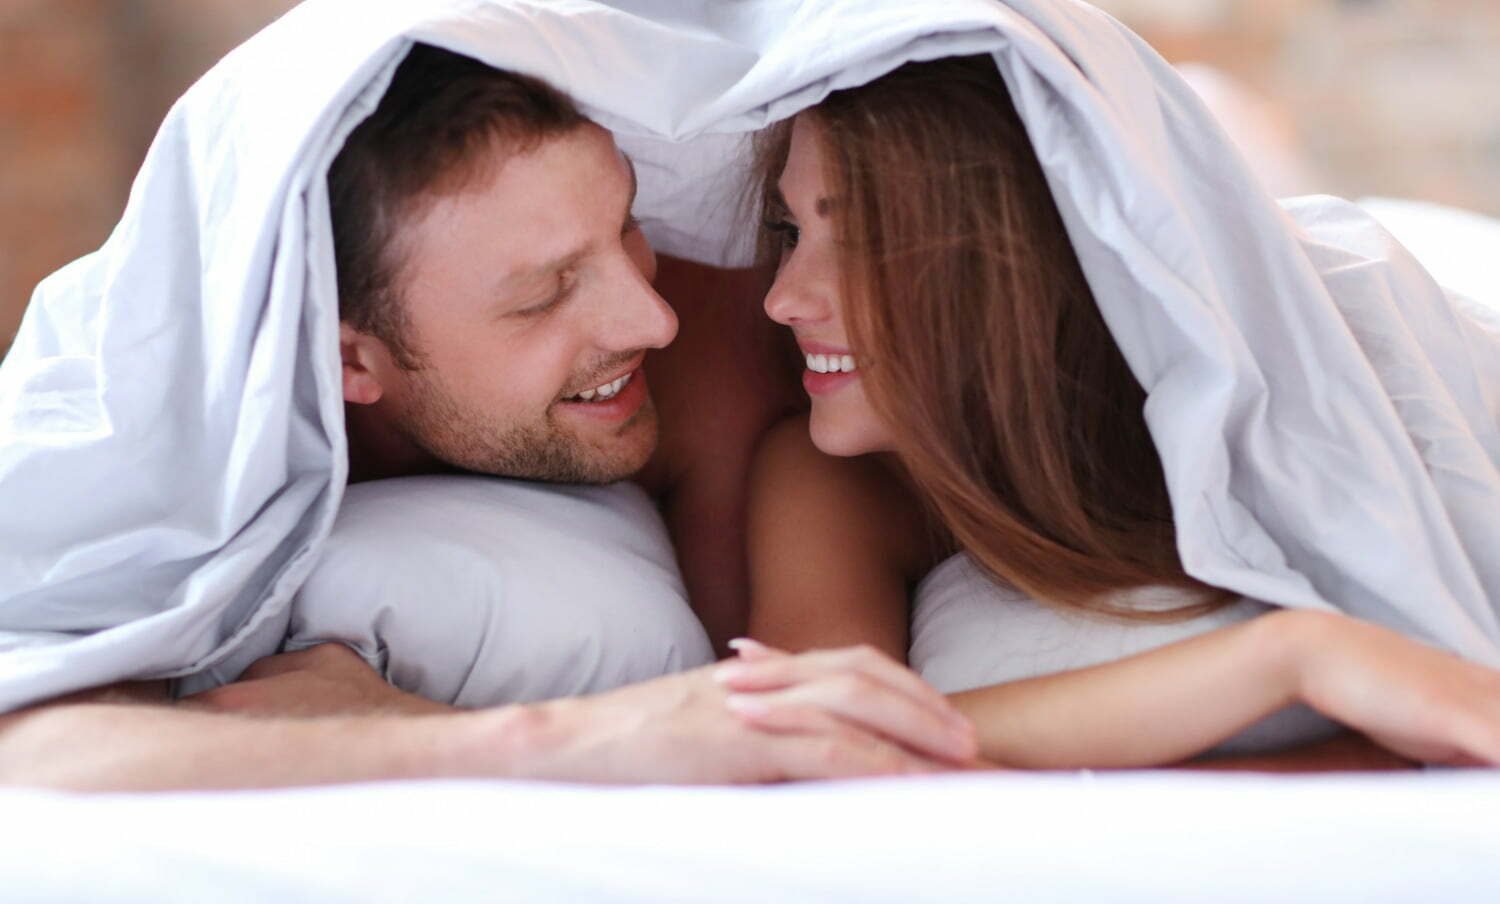 Pareja en intimidad debajo de las sábanas - fantasías - relaciones sexuales a diario